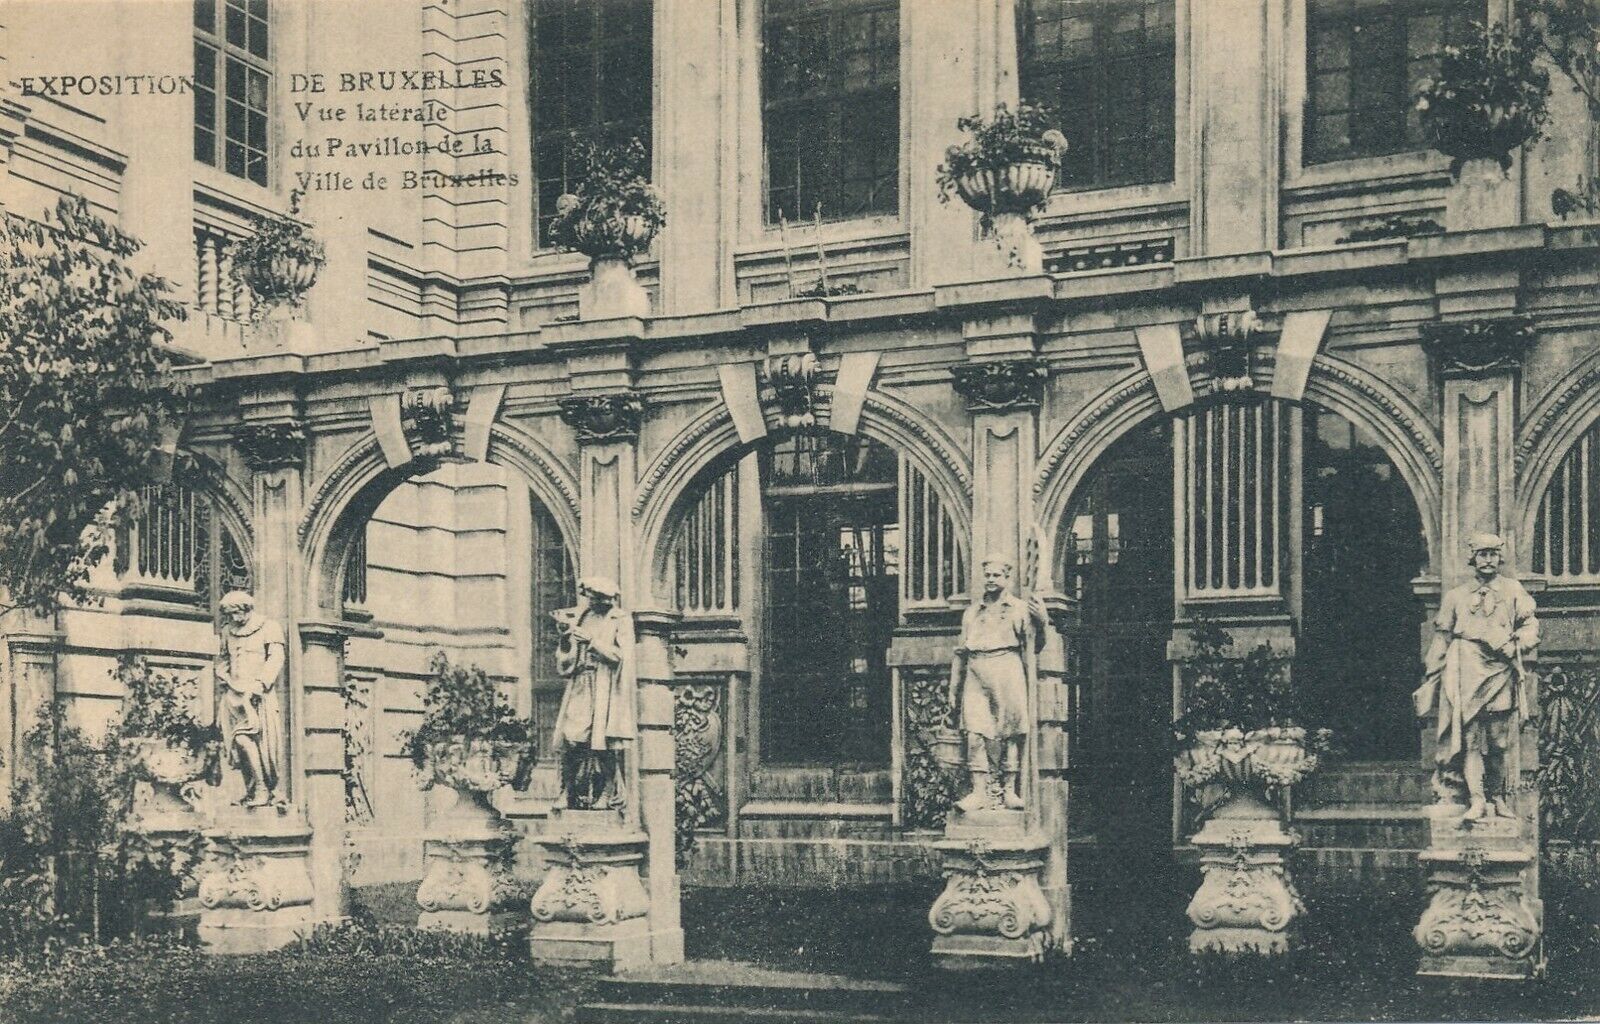 1910 Bruxelles Exposition Pavillon de la Ville de Bruxelles